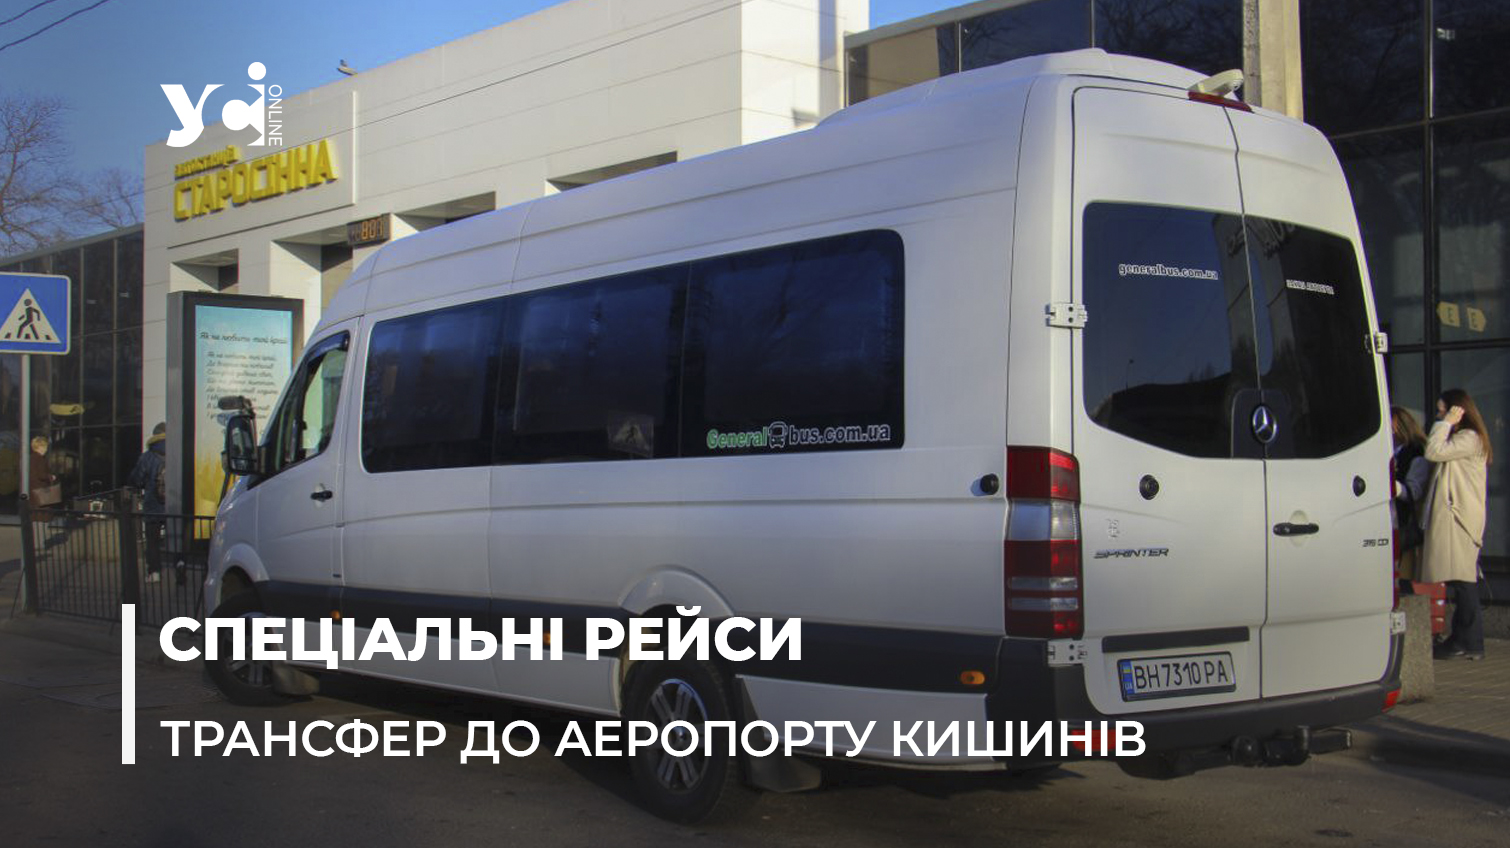 Аеротрансфер: з Одеси відправився перший автобусний рейс в аеропорт Кишинів (фото, відео) «фото»